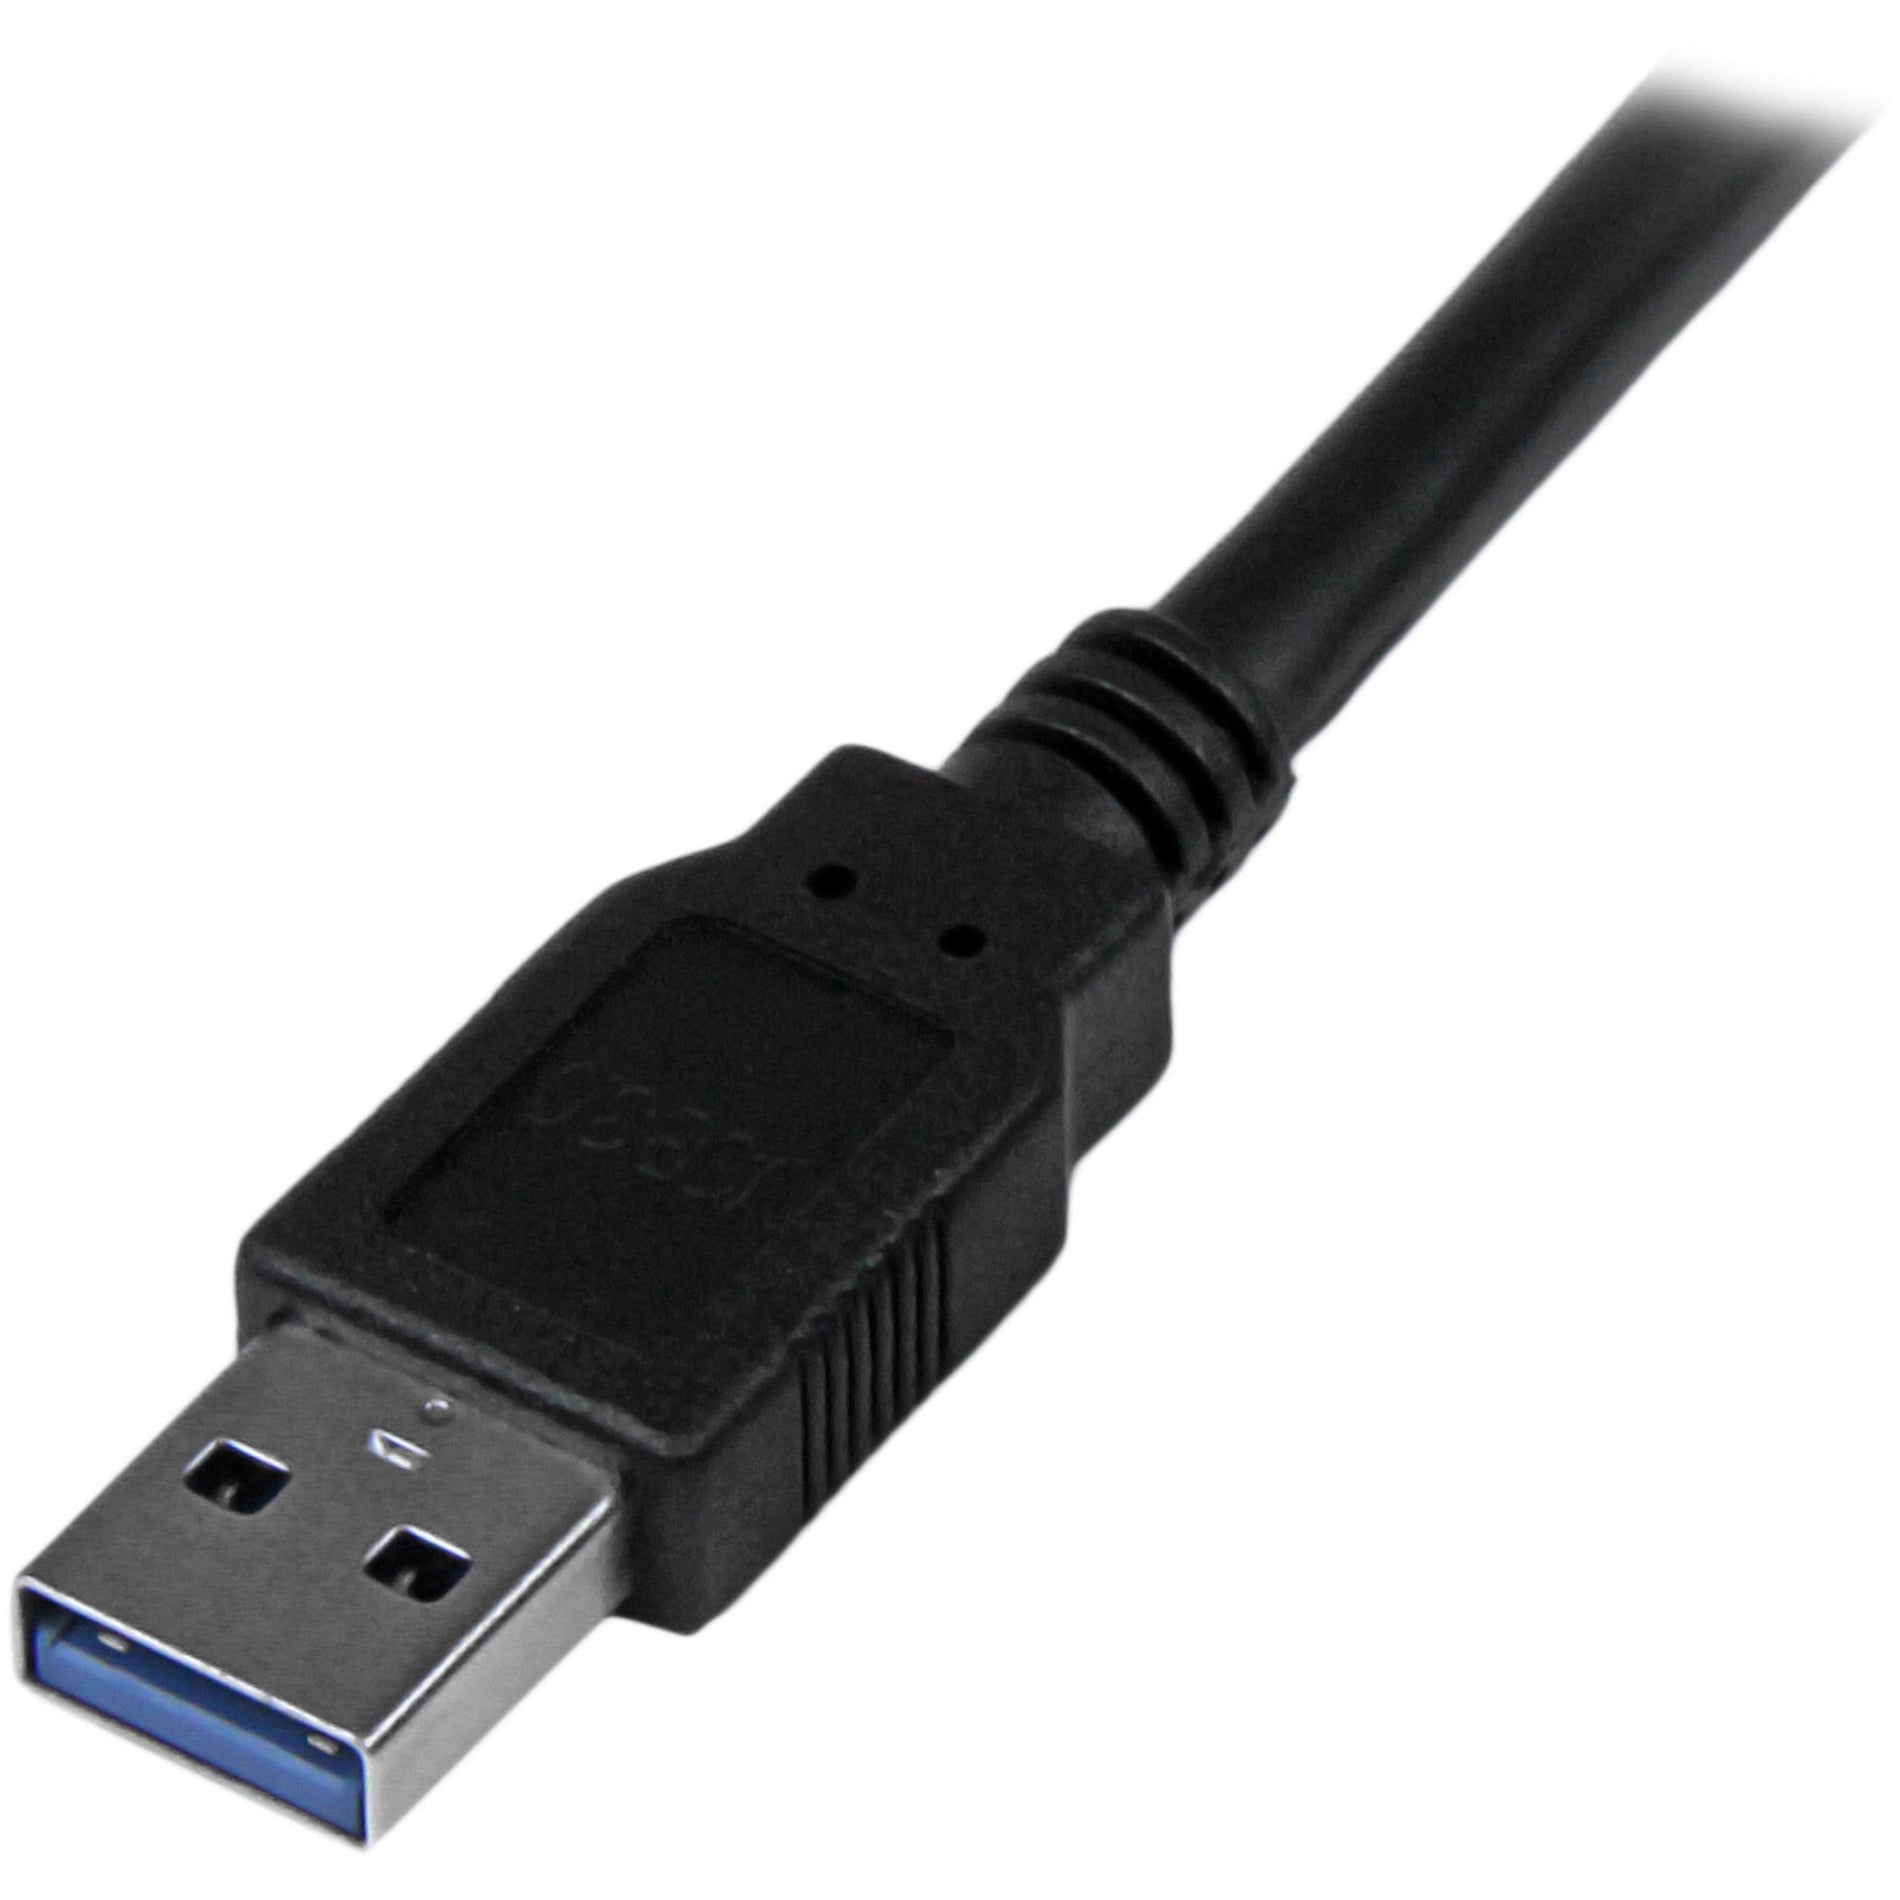 スタートレックドットコム USB3SAA6BK 6 ft ブラックスーパースピードUSB 3.0ケーブル A to A - M/M、高速データ転送、EMI保護、生涯保証